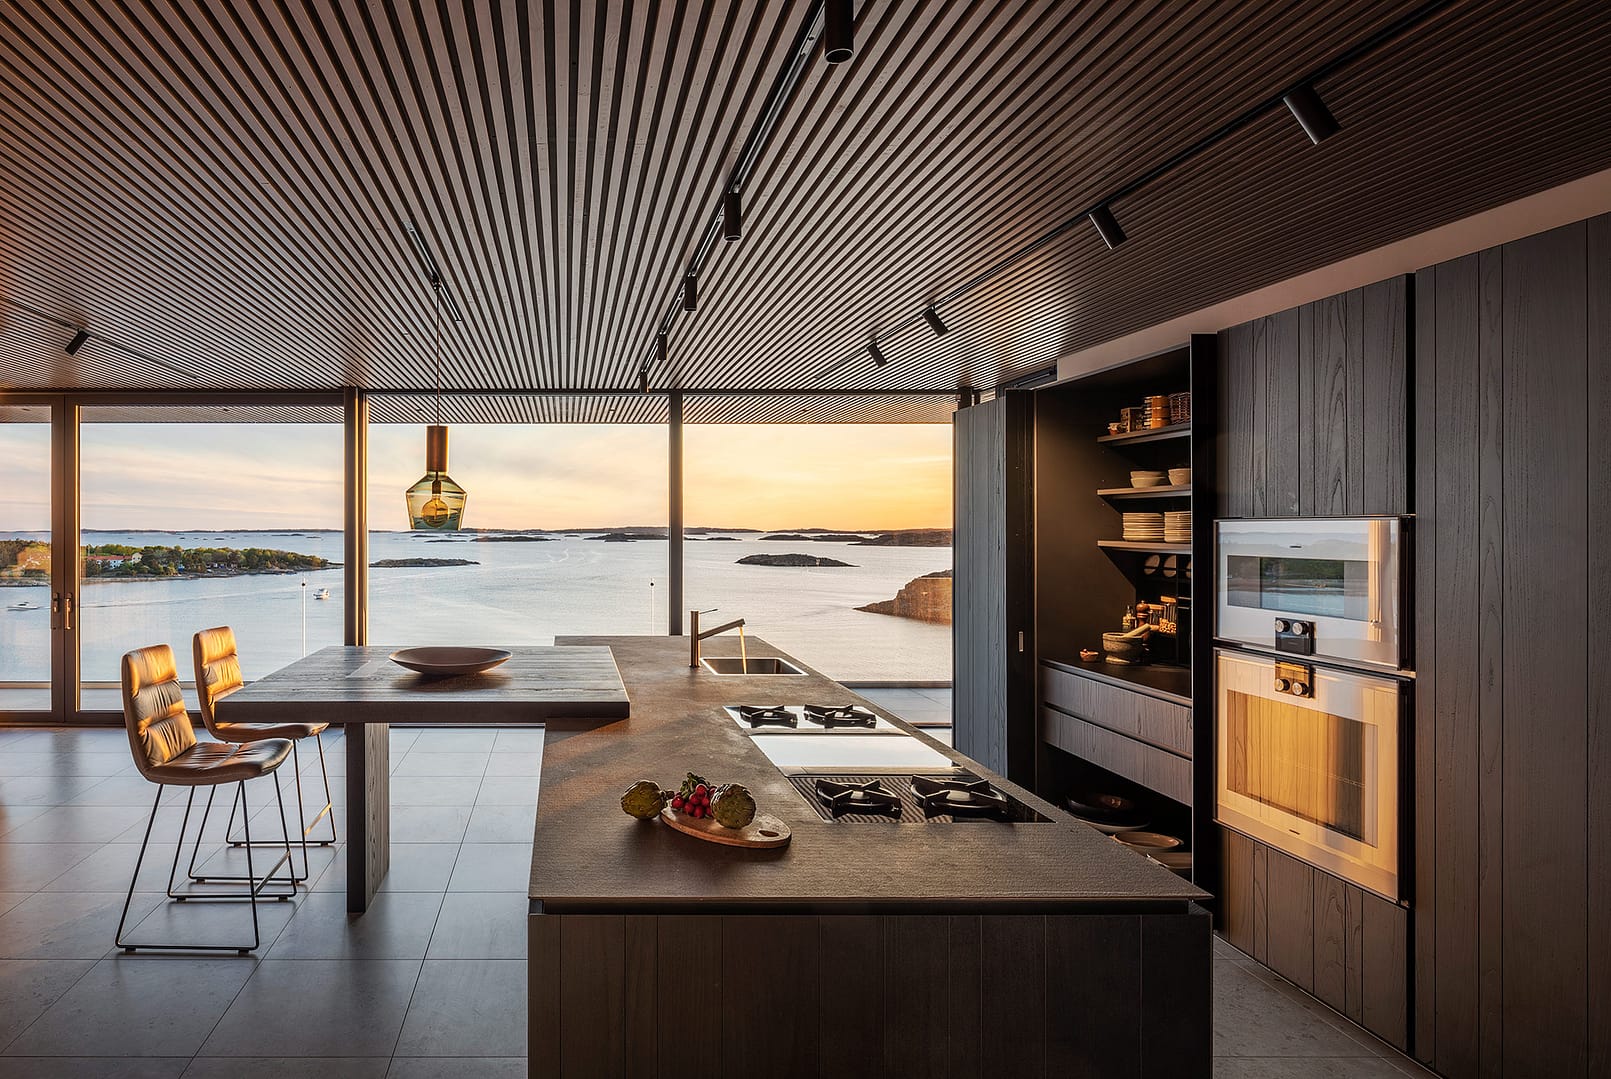 Corso Studios ritar hela hem hjälper dig med din köksrenovering-badrum-förvaring -innerdörrar och belysning. Göteborg Poliform Occhio Salvatori Agape